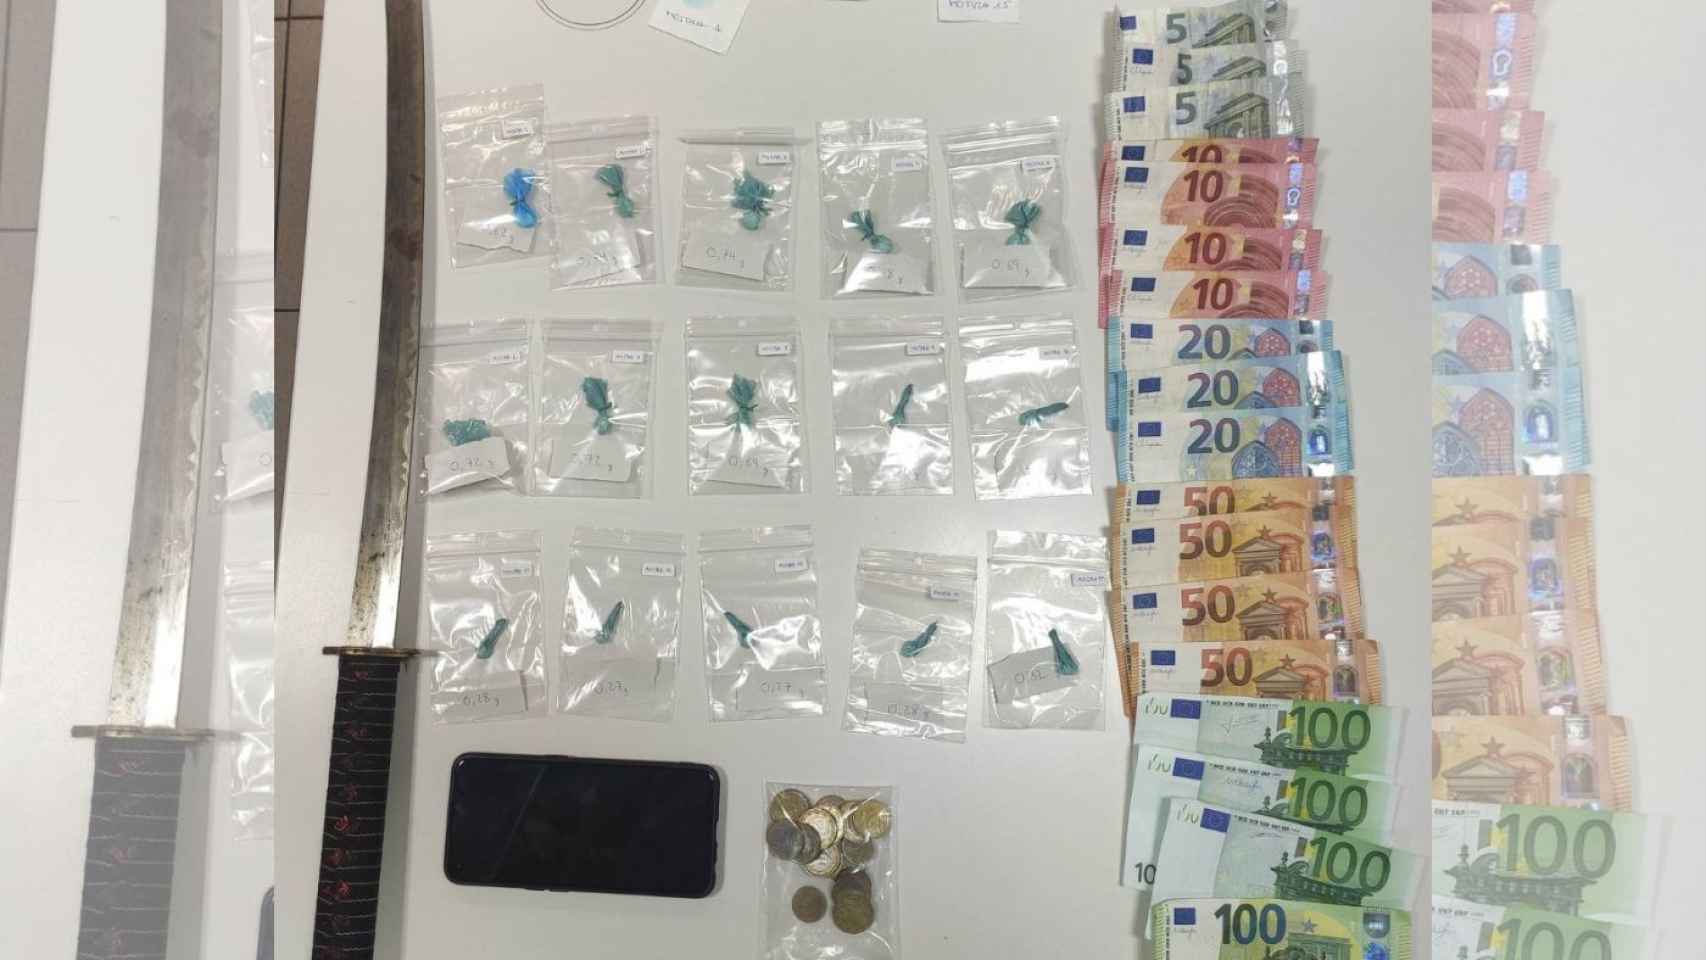 Paquetes y dinero decomisados durante el registro al hombre que vendía droga en un patinete en Badalona / MOSSOS D'ESQUADRA